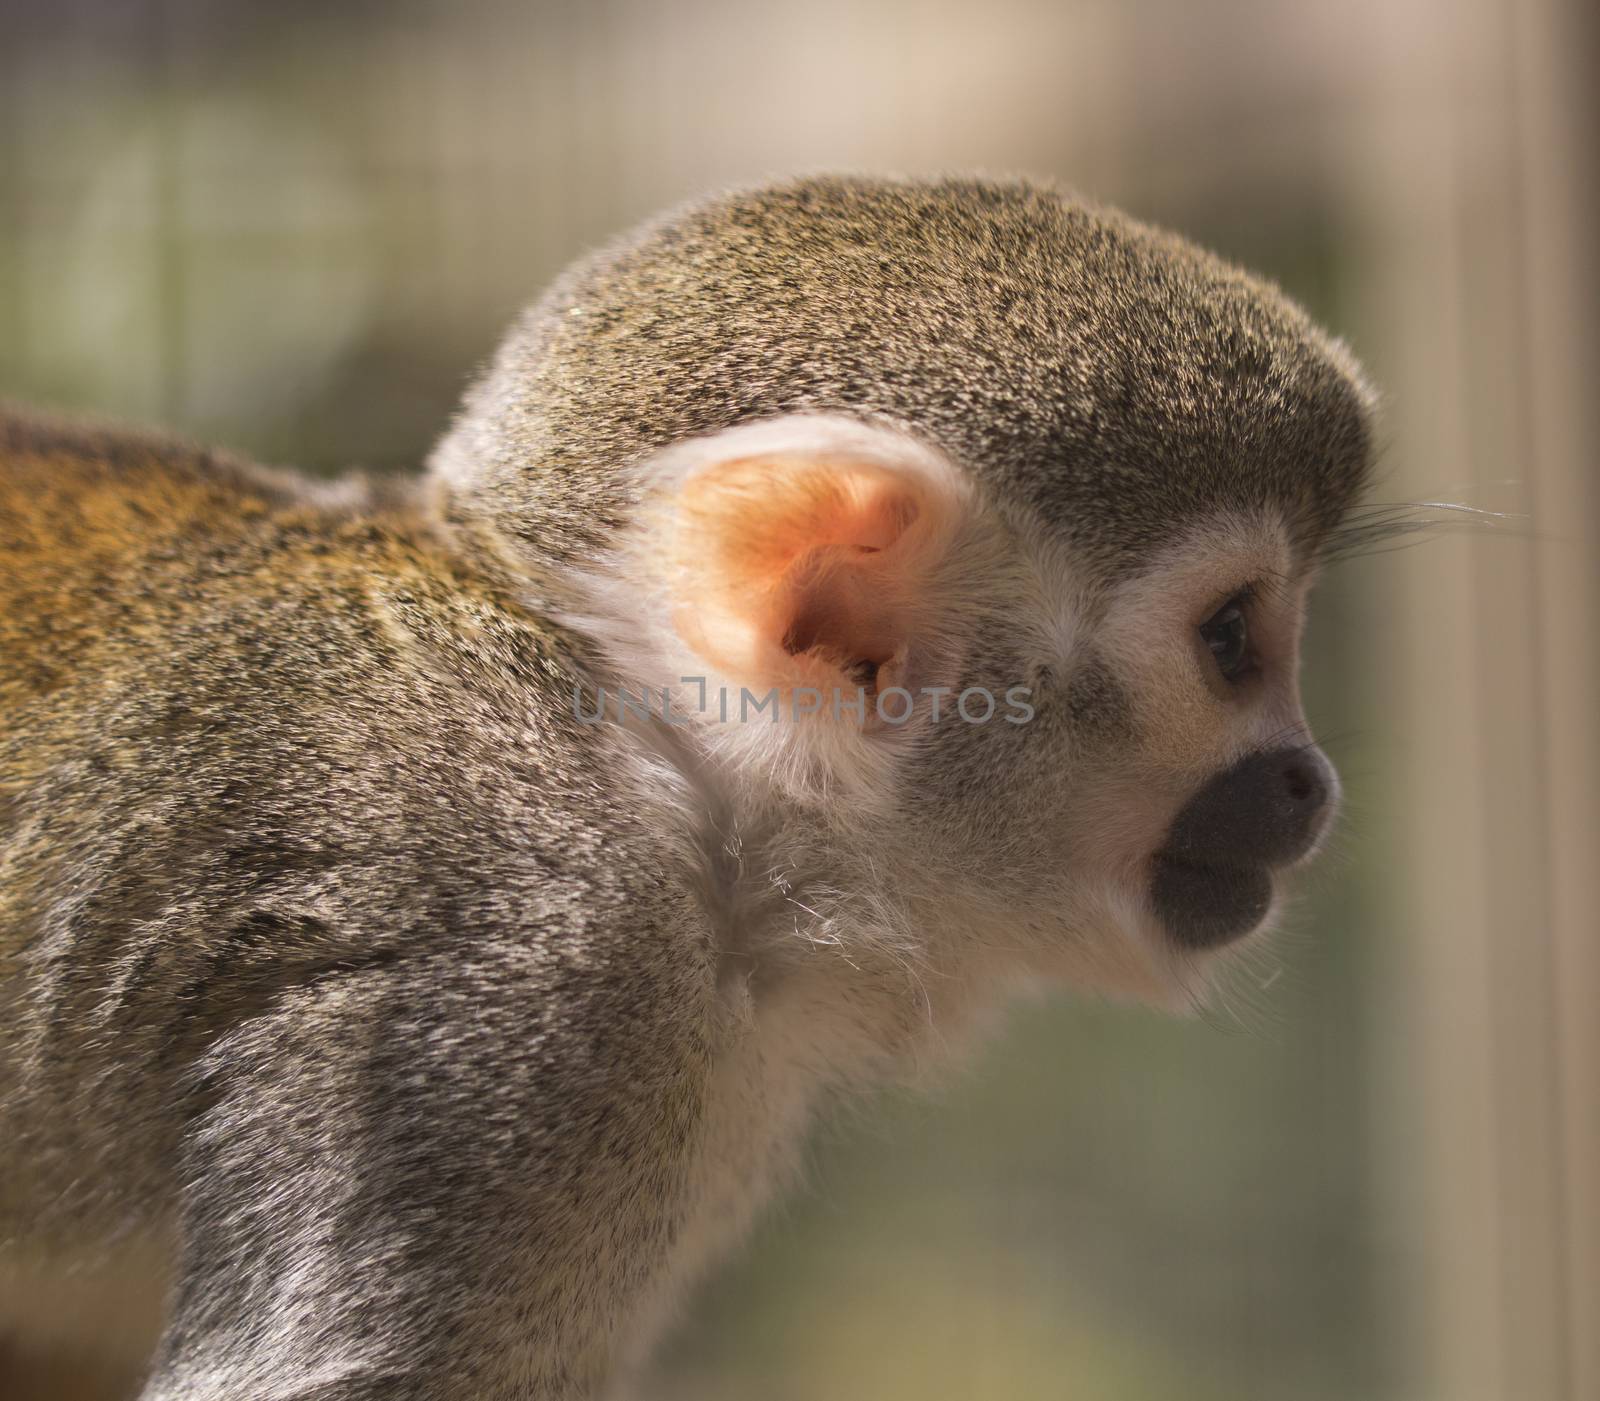 Squirrel monkey by avanheertum